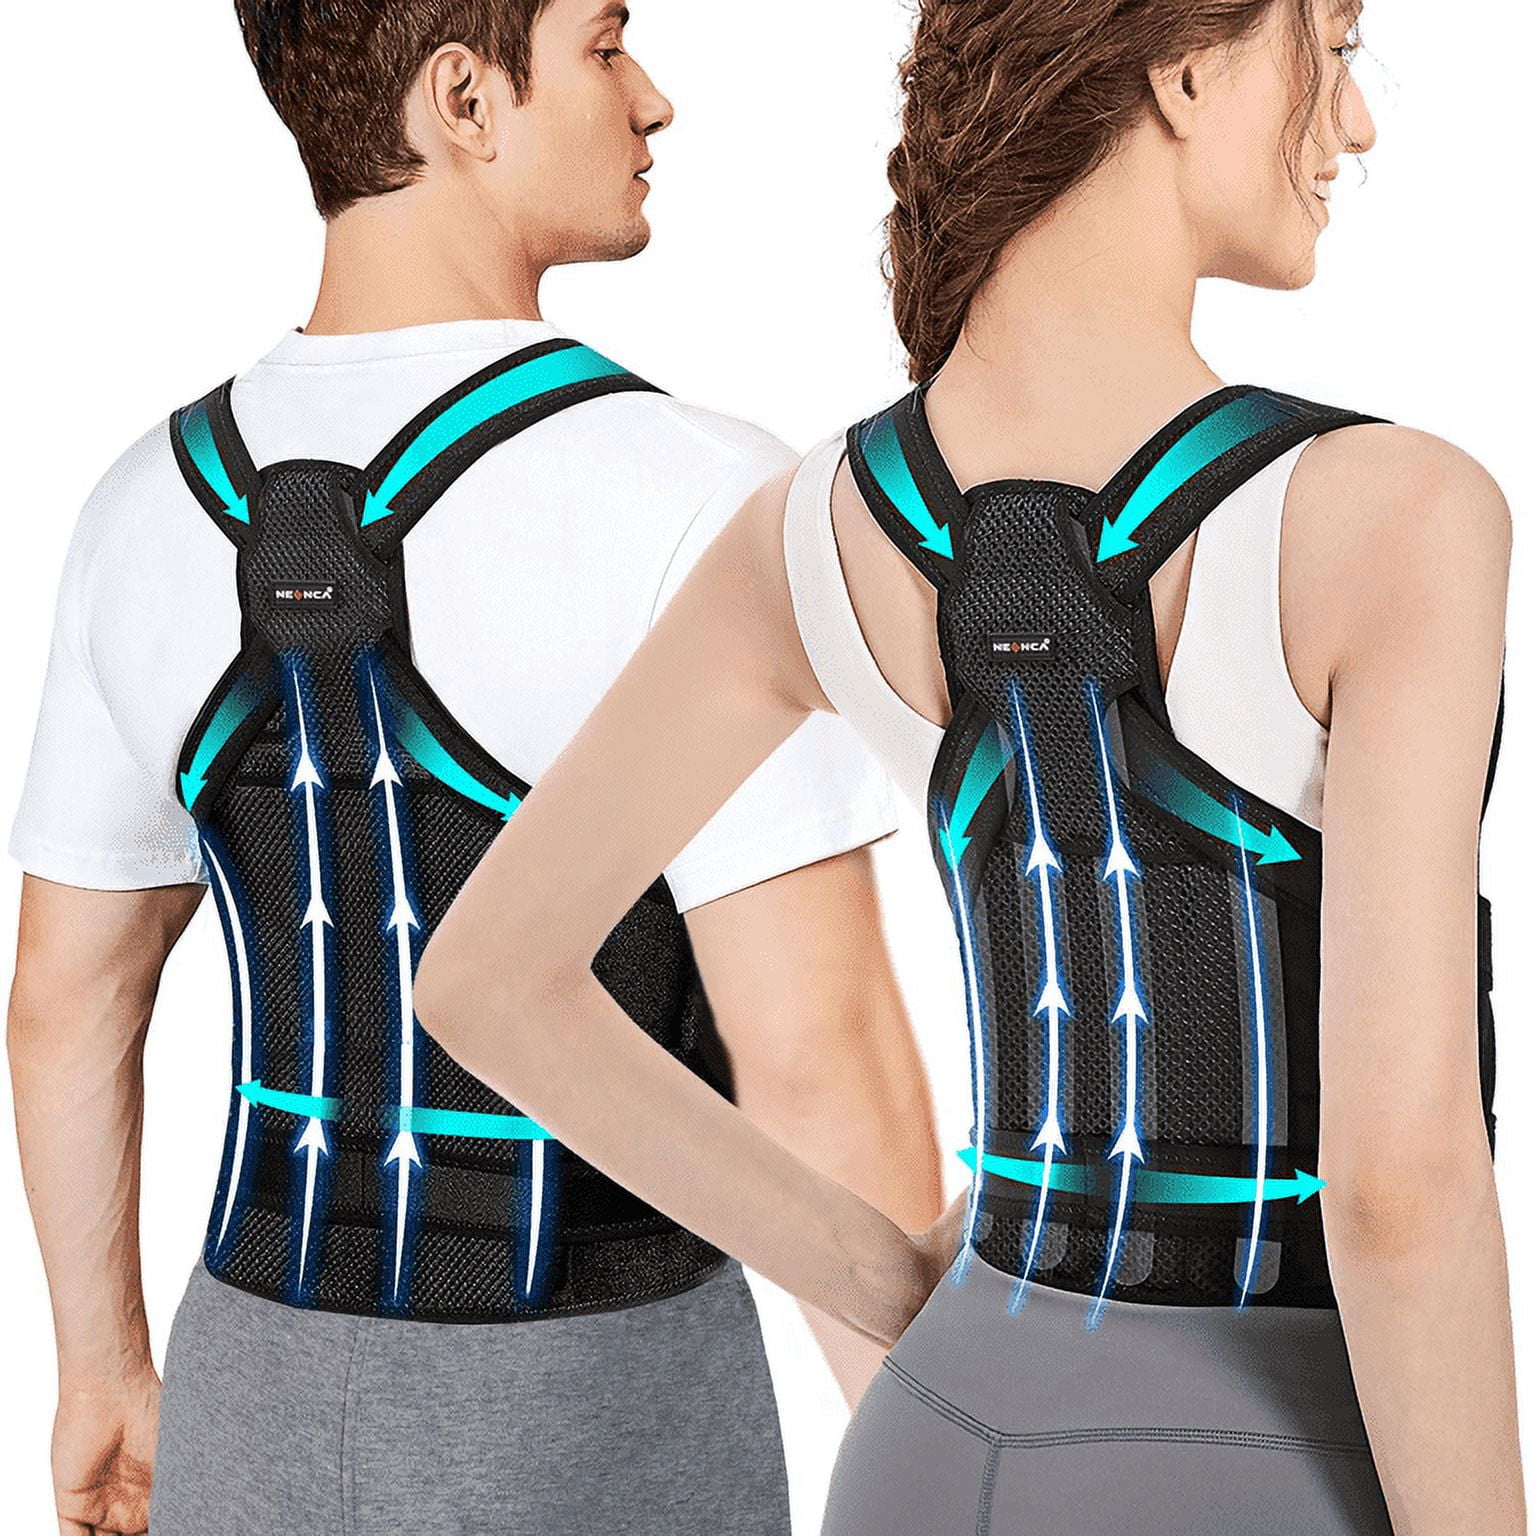 Posture Corrector for Women and Men,Adjustable Upper Back